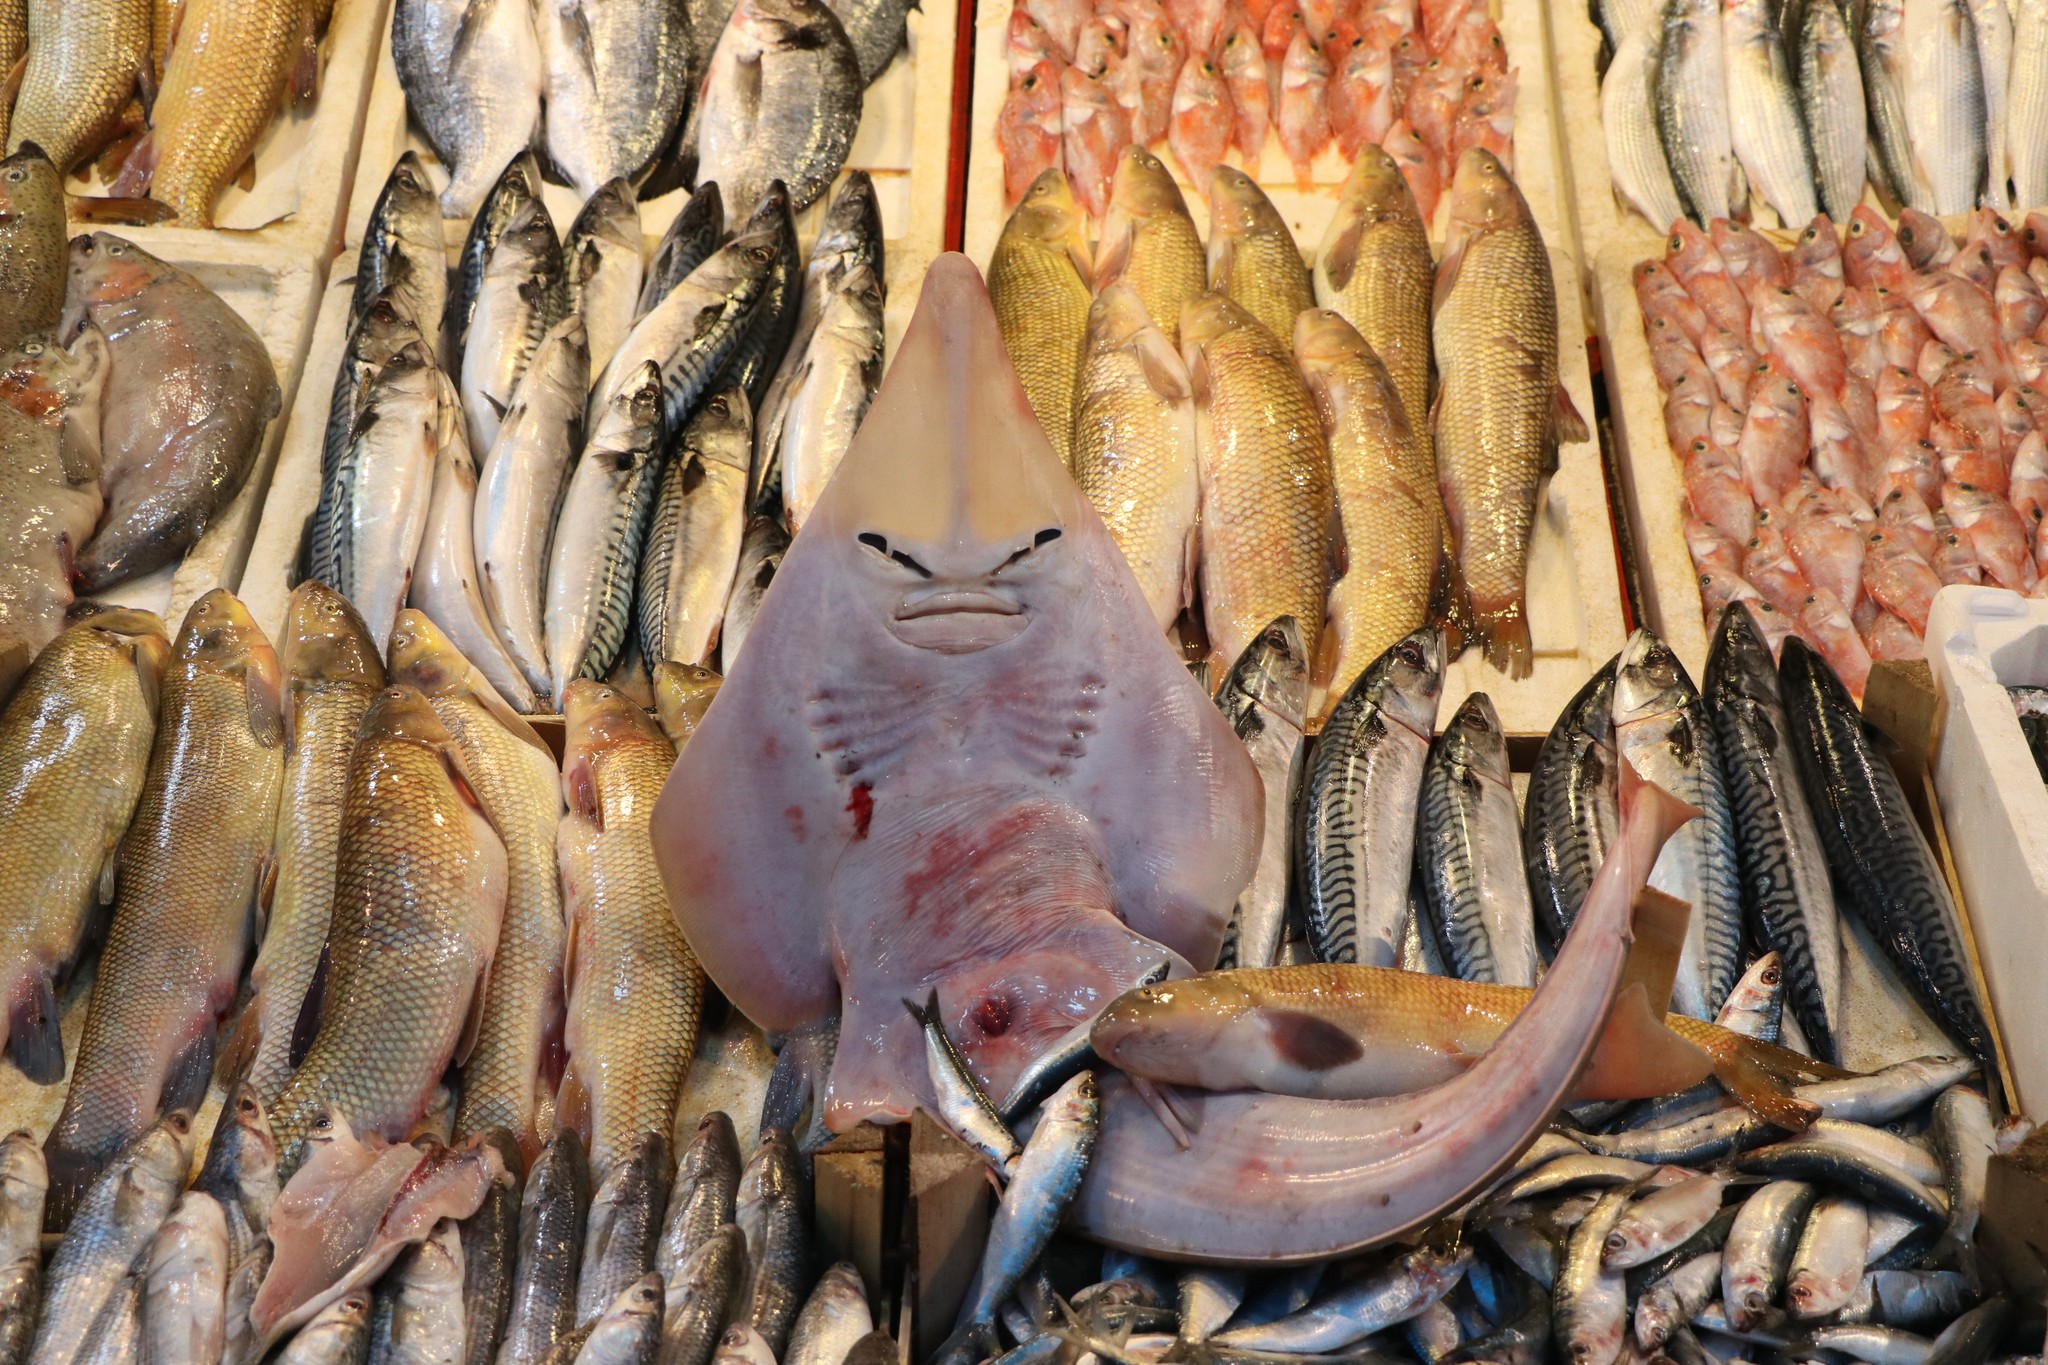 Mersin’de balıkçıların ağına takılan insan yüzlü balık, görenleri hayrete düşürüyor